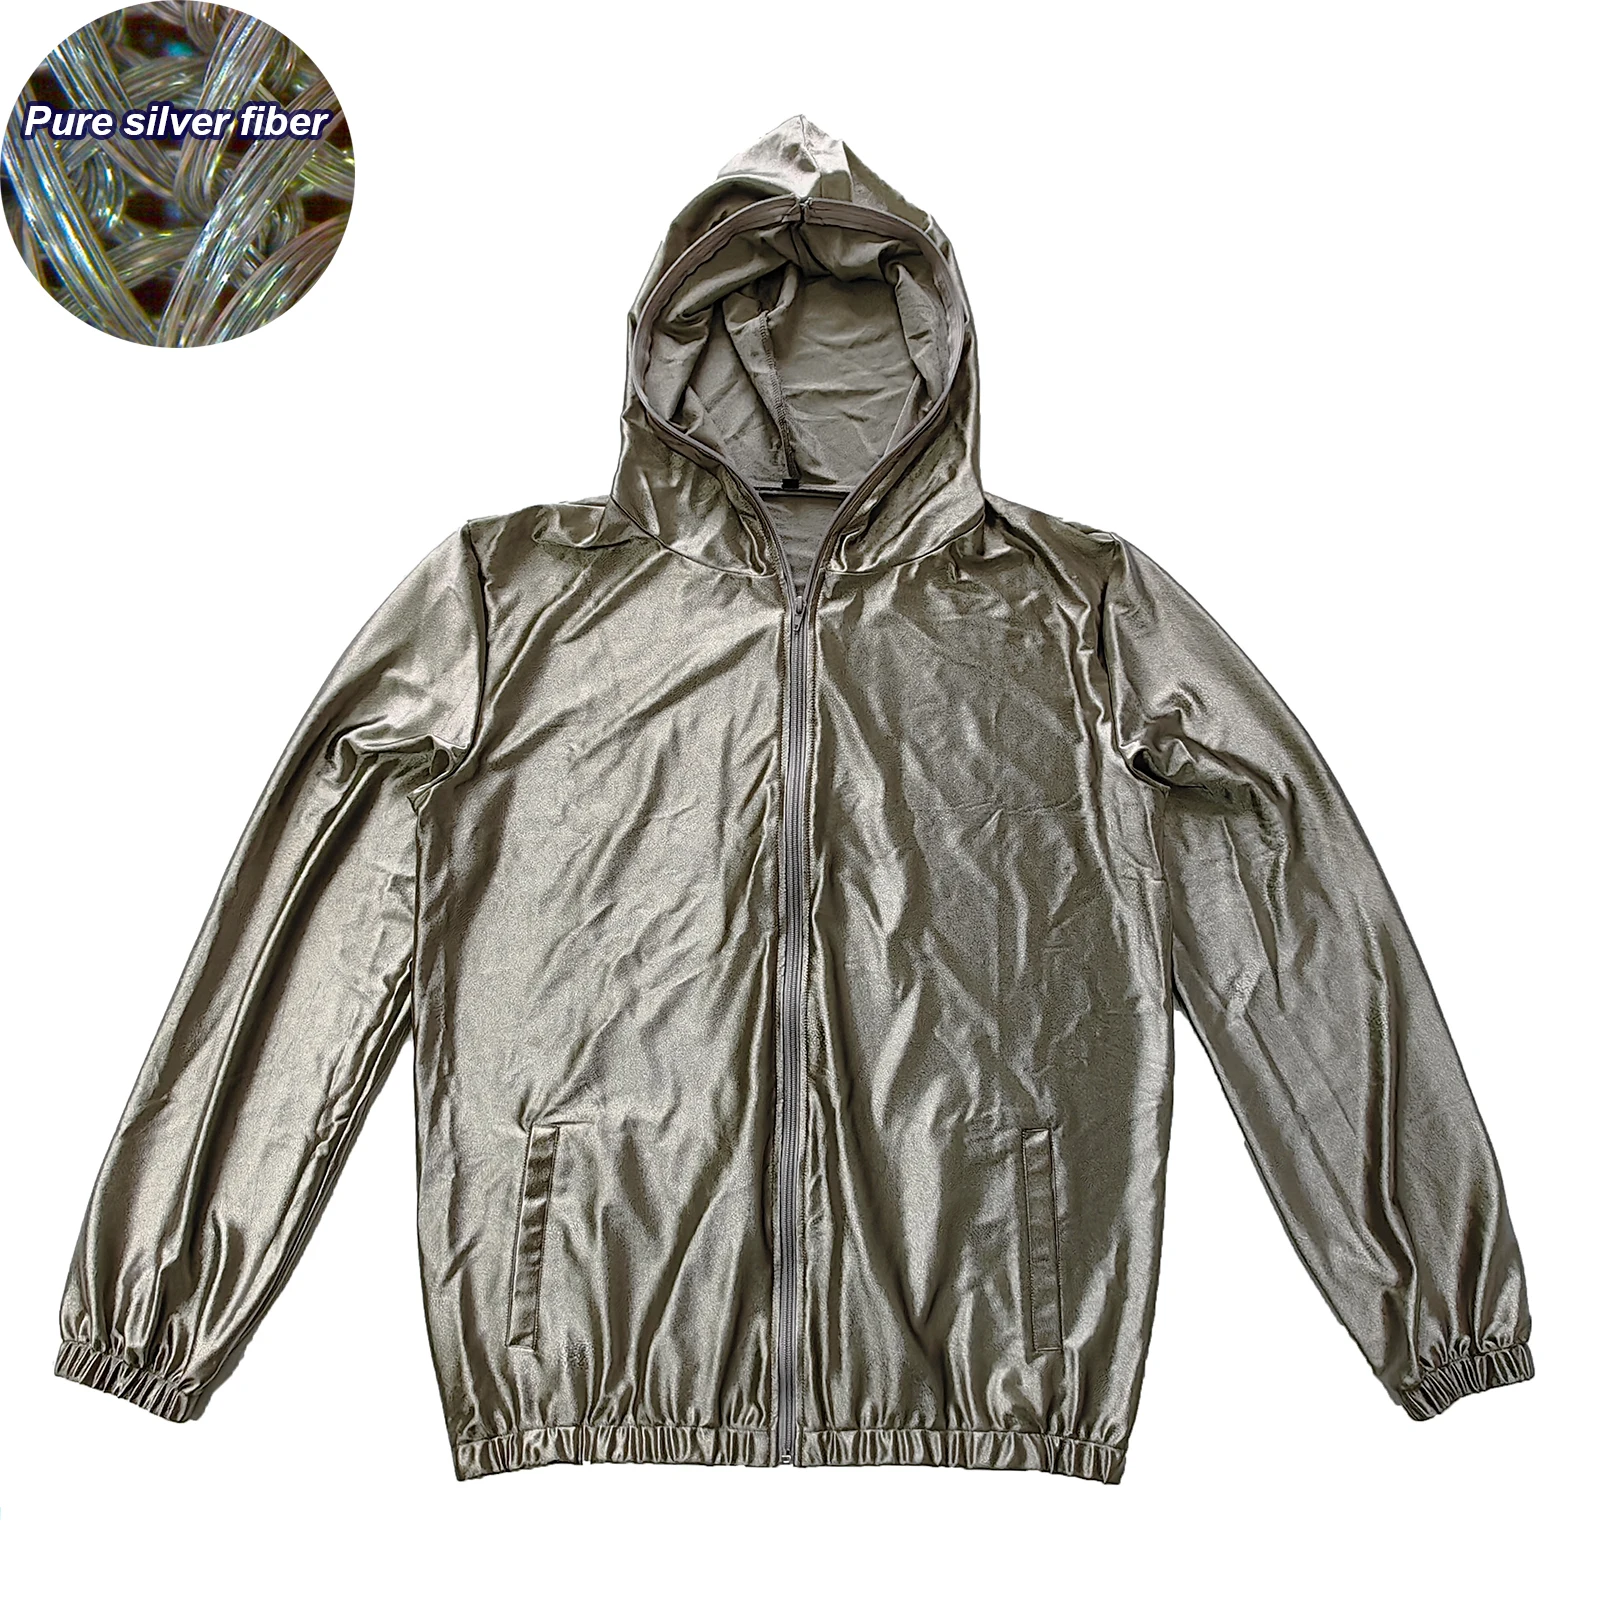 Теплопроводящая толстовка из серебряного волокна с защитой от излучения EMF/EMI/RF, блокирующая Фарадея, тканевая защитная куртка, блестящее Короткое серебряное пальто